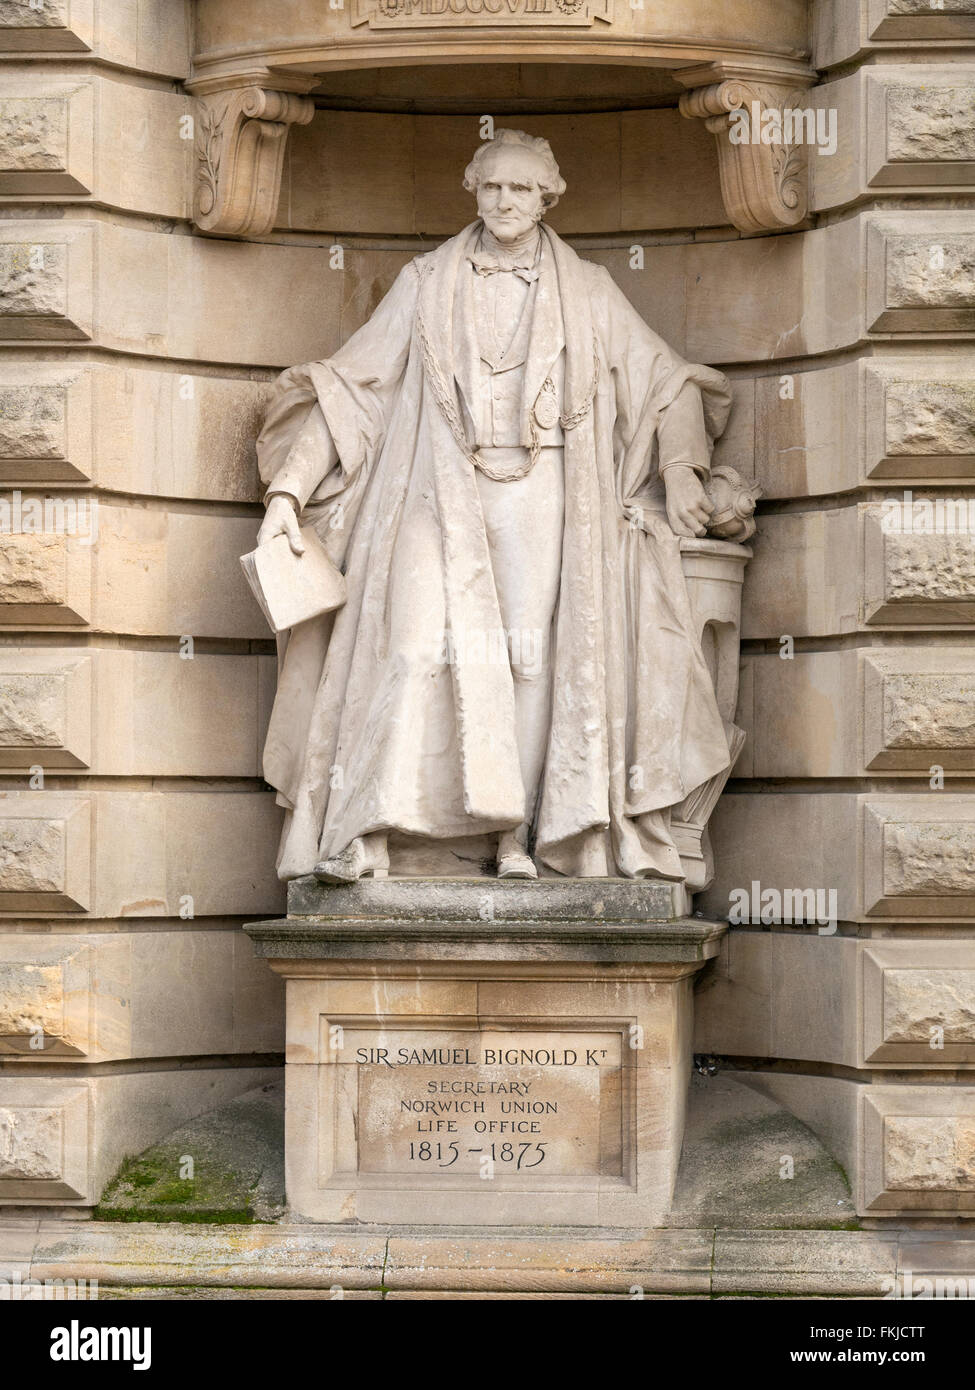 Statue de Sir Samuel Bignold en dehors de Surrey House, Norwich Norfolk Angleterre Royaume-uni. Banque D'Images